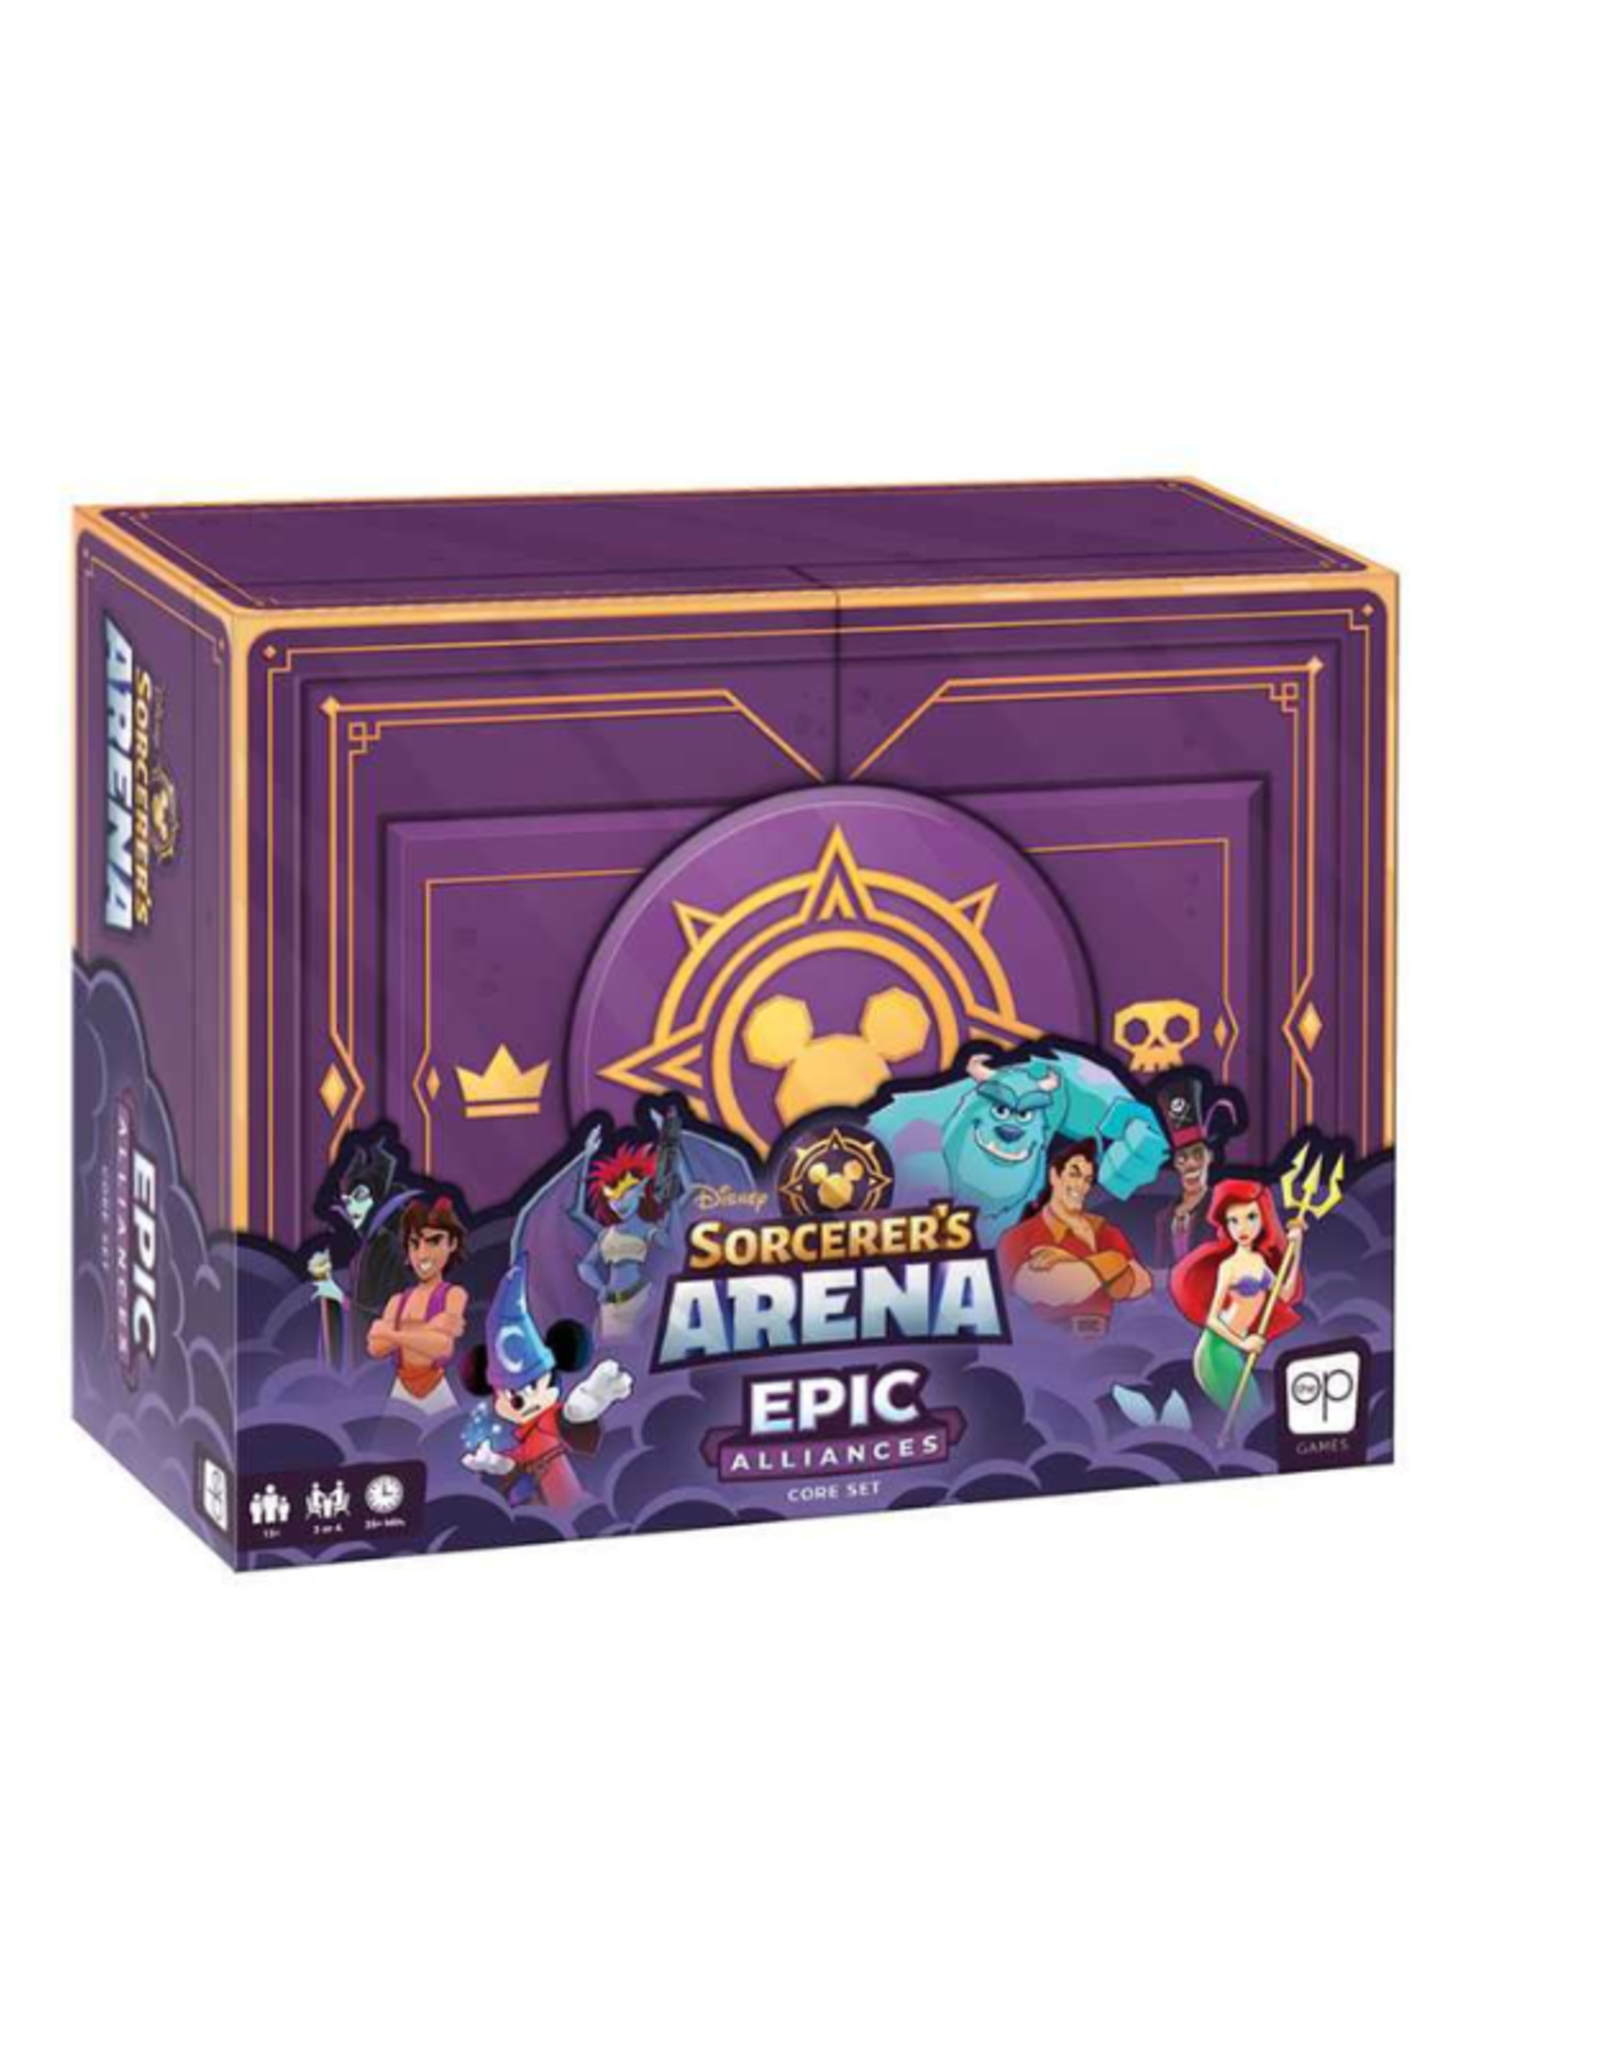 Sorcerer's Arena: Epic Alliances